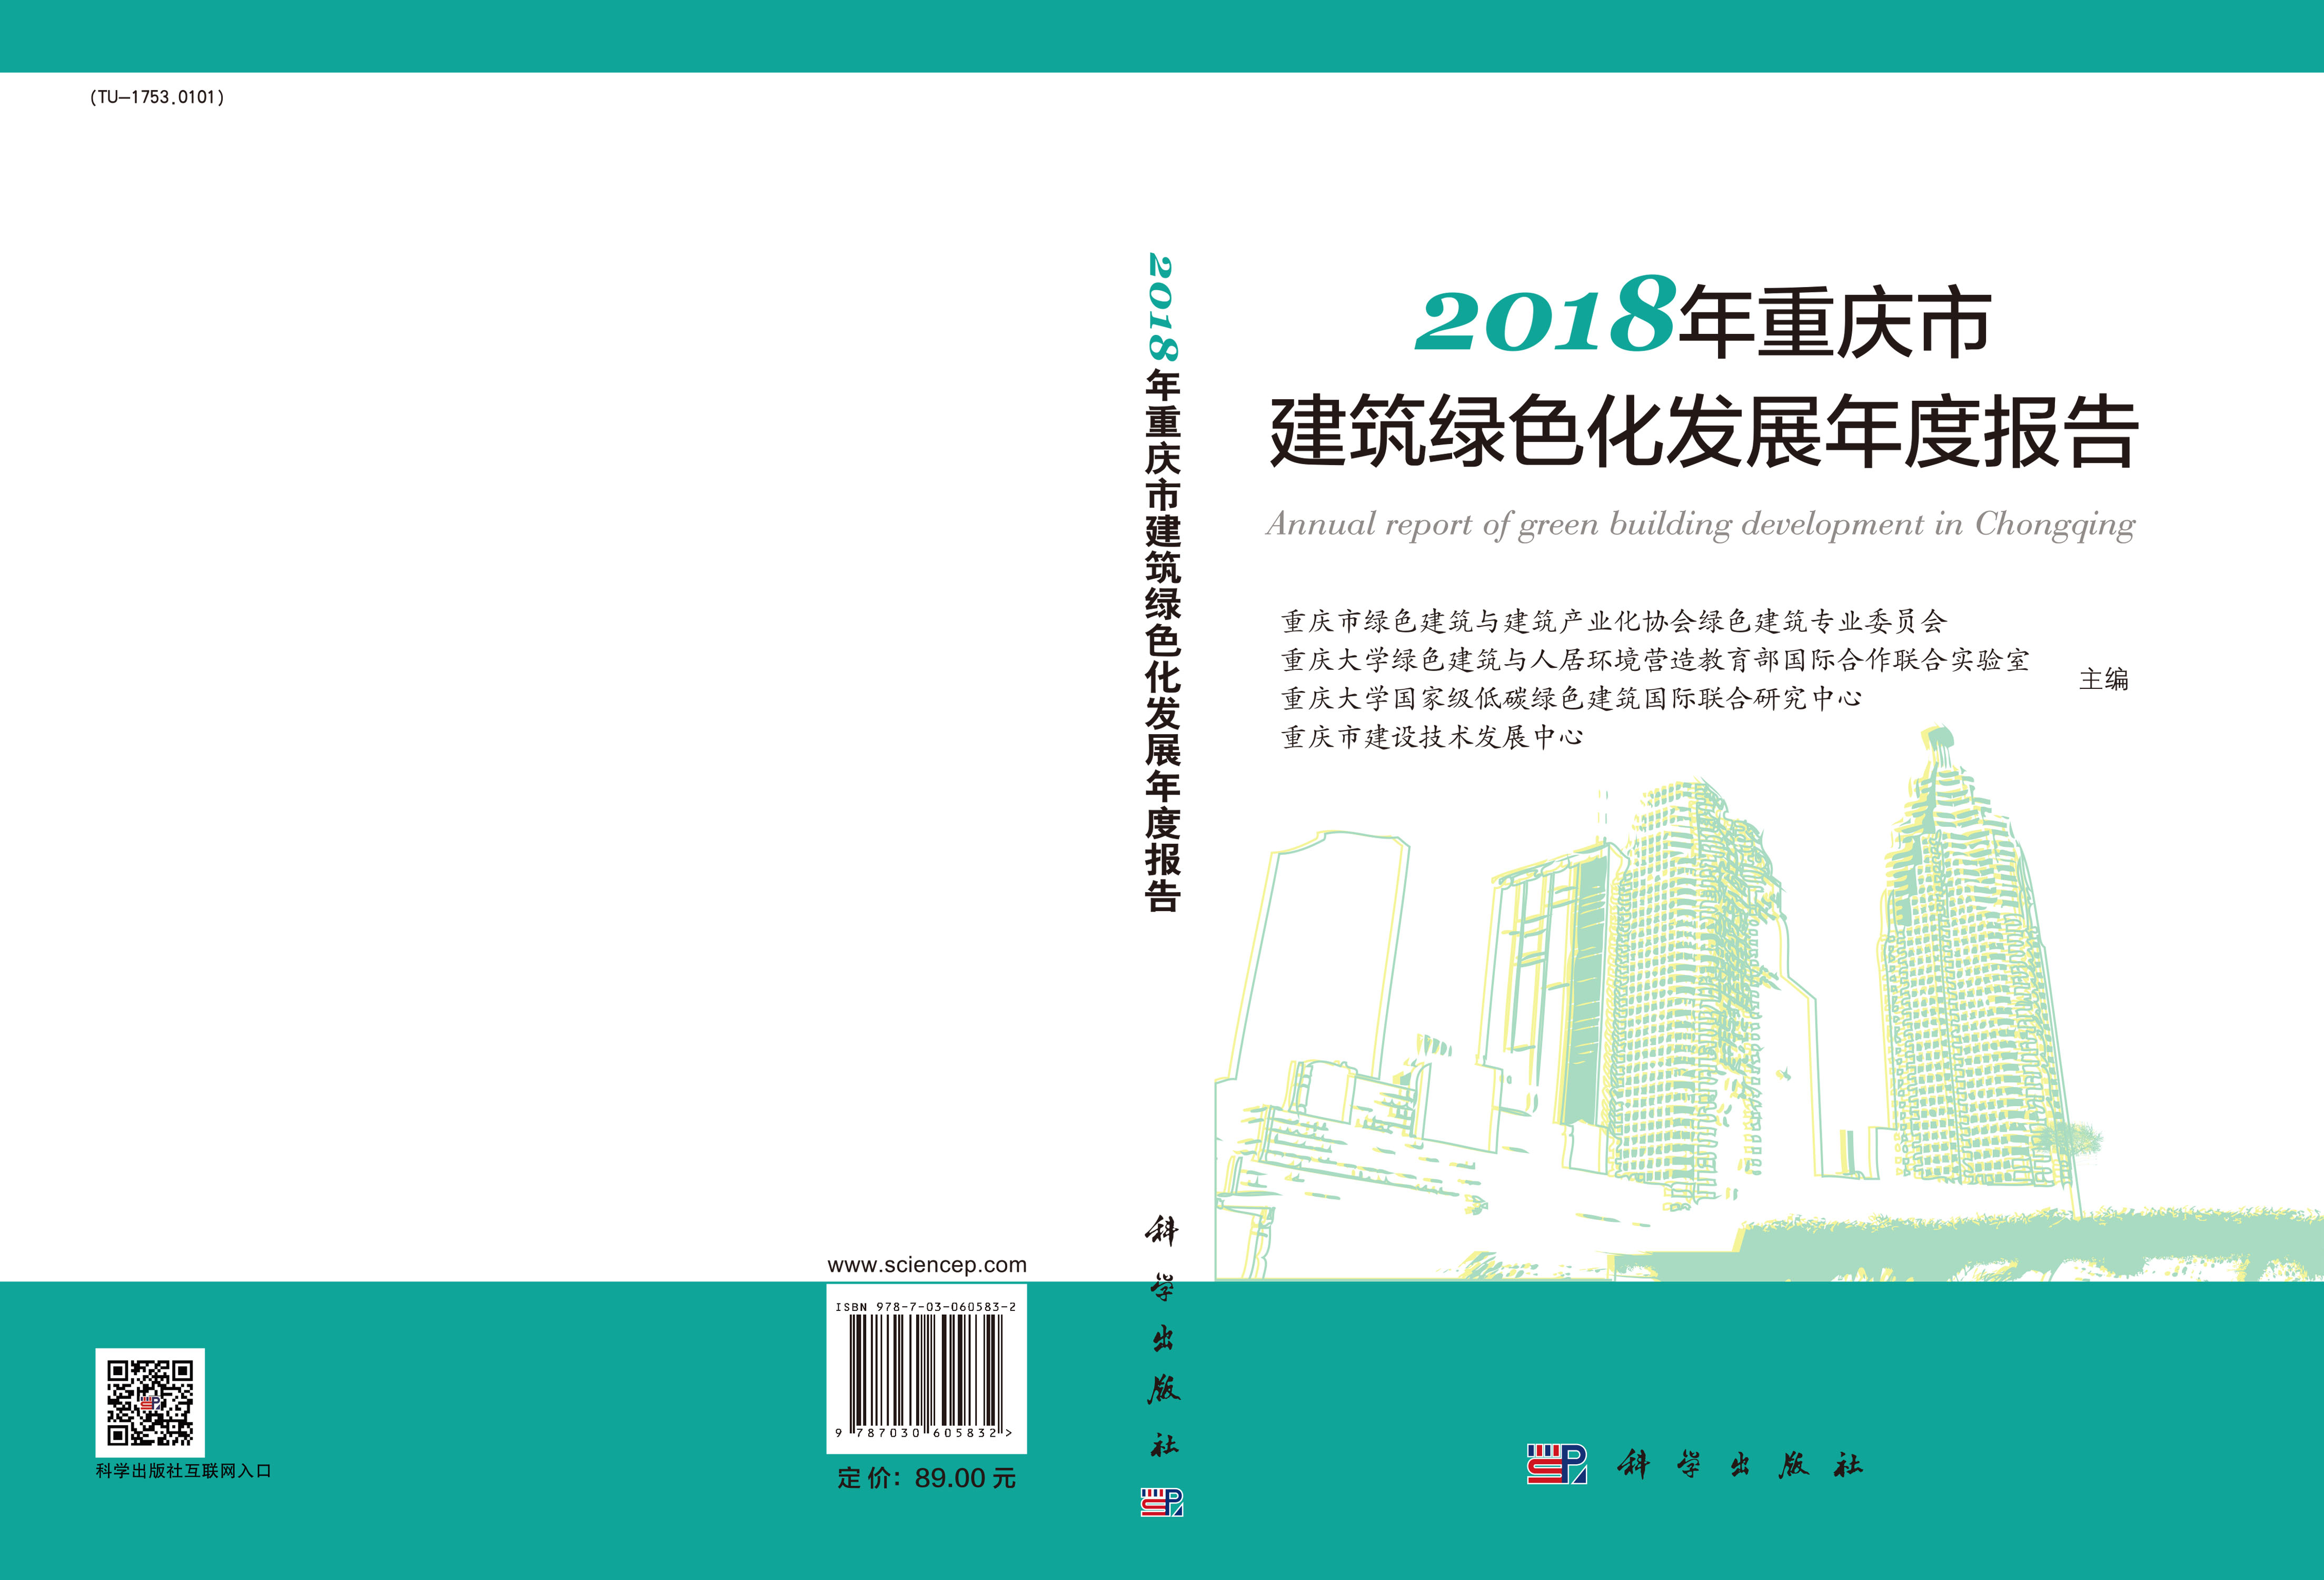 2018年重庆市建筑绿色化发展年度报告